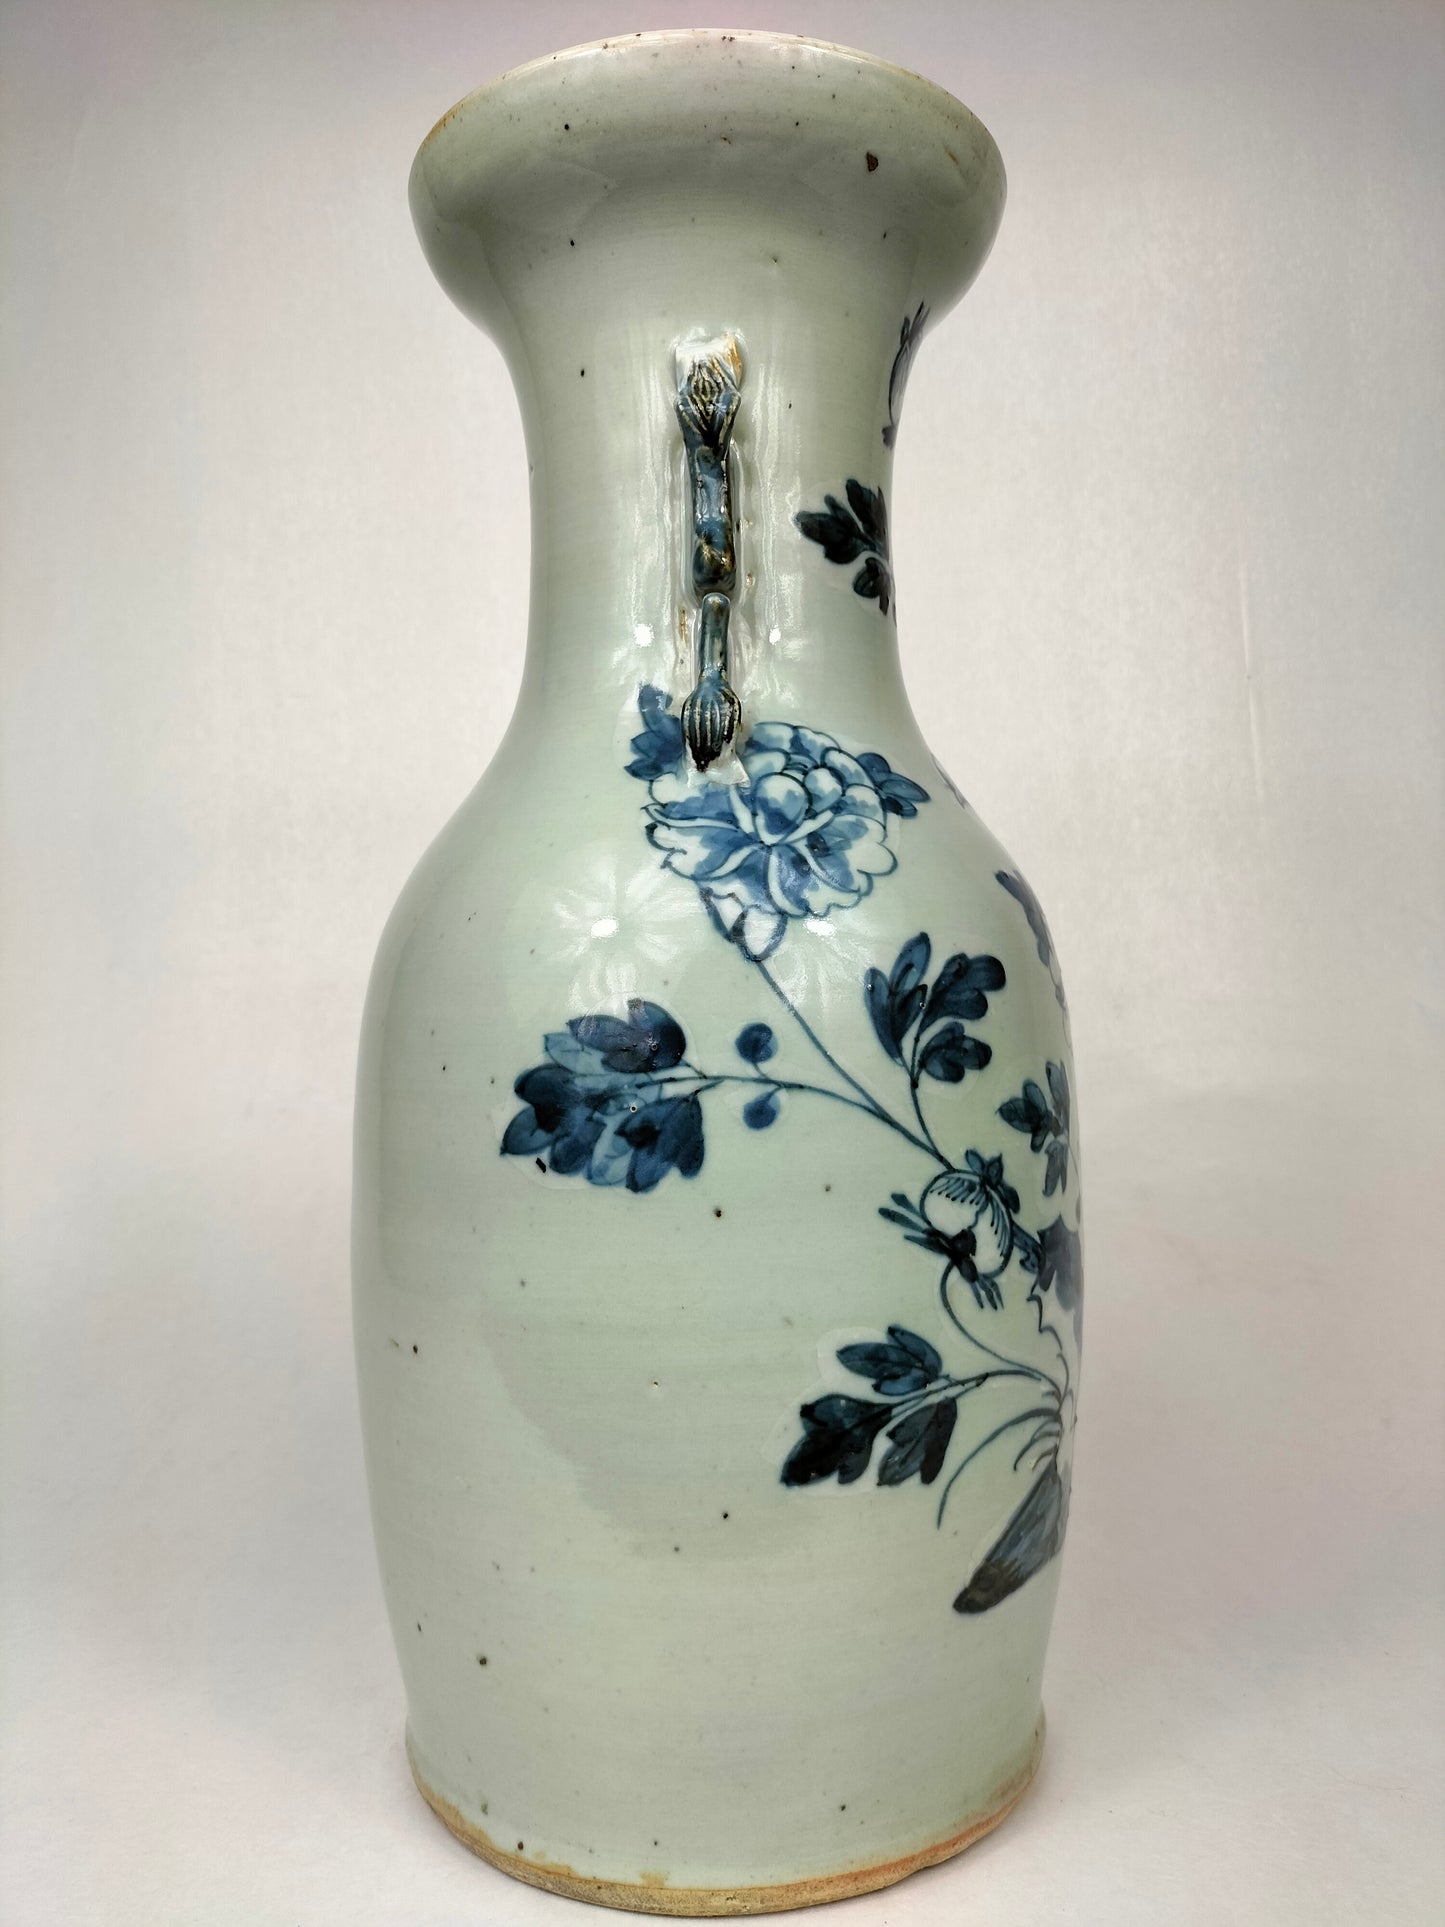 古董中国青瓷花瓶//清朝 - 19 世纪